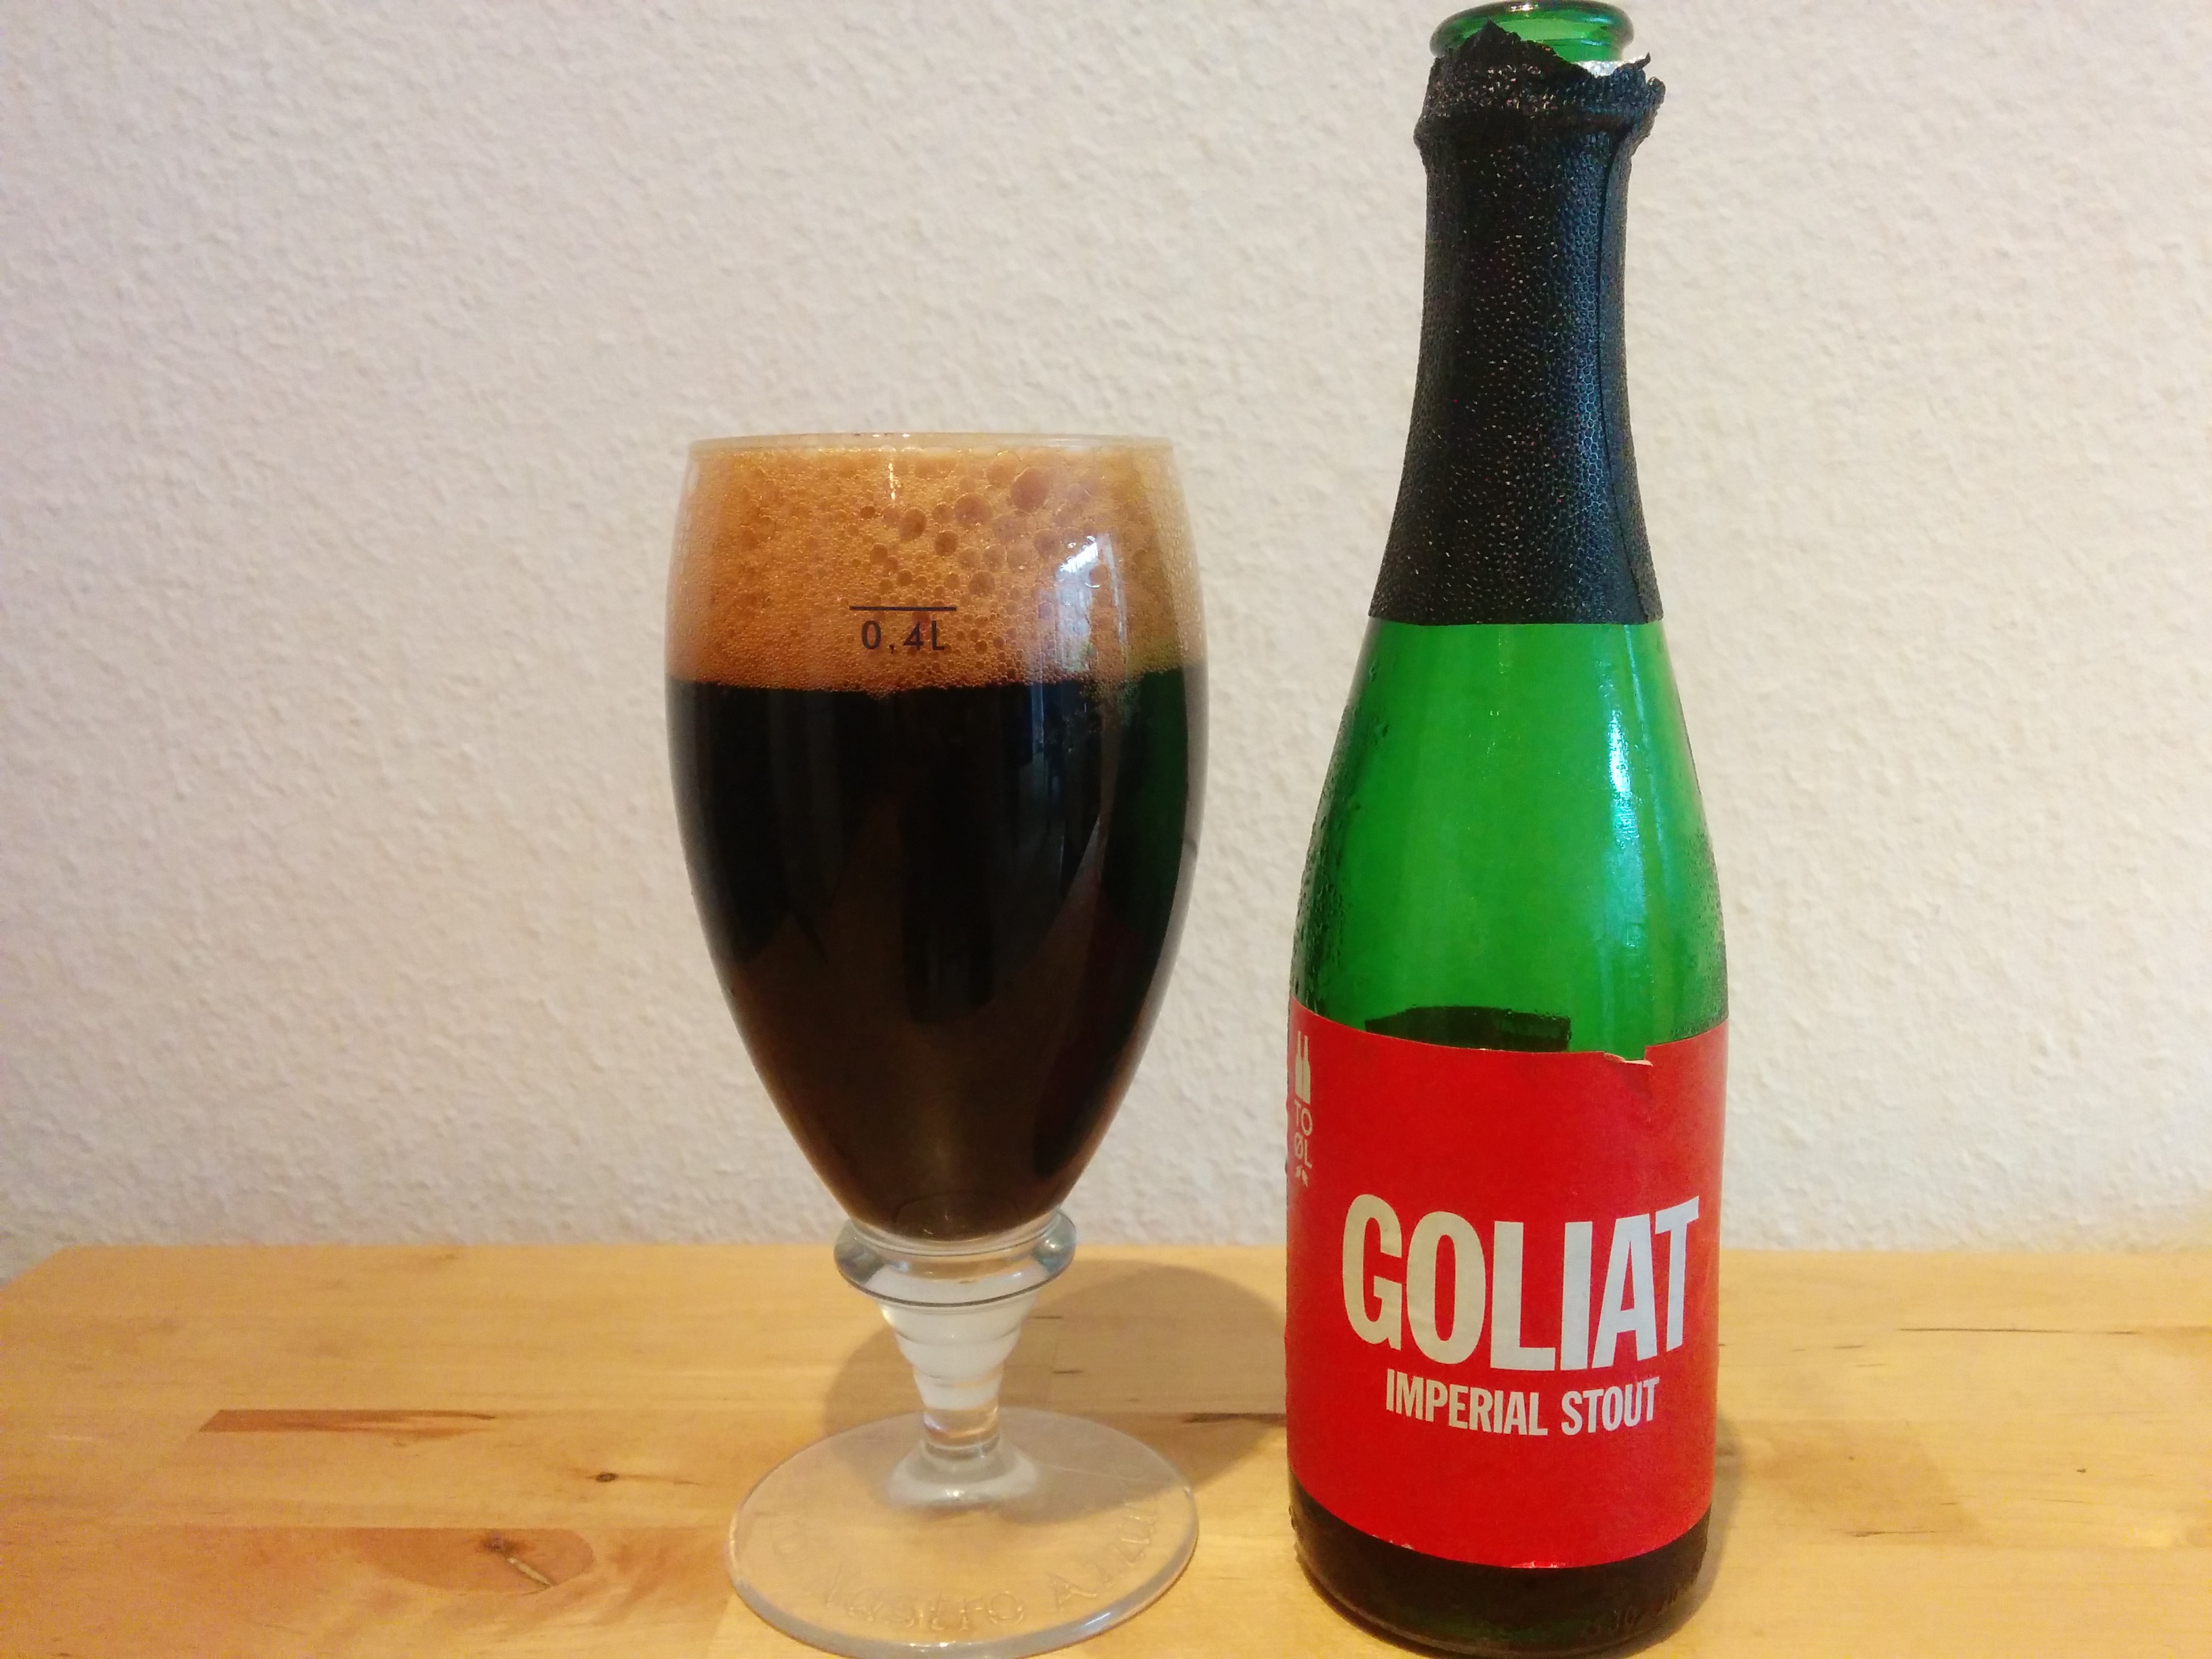 To Øl Goliat - I glas og flaske